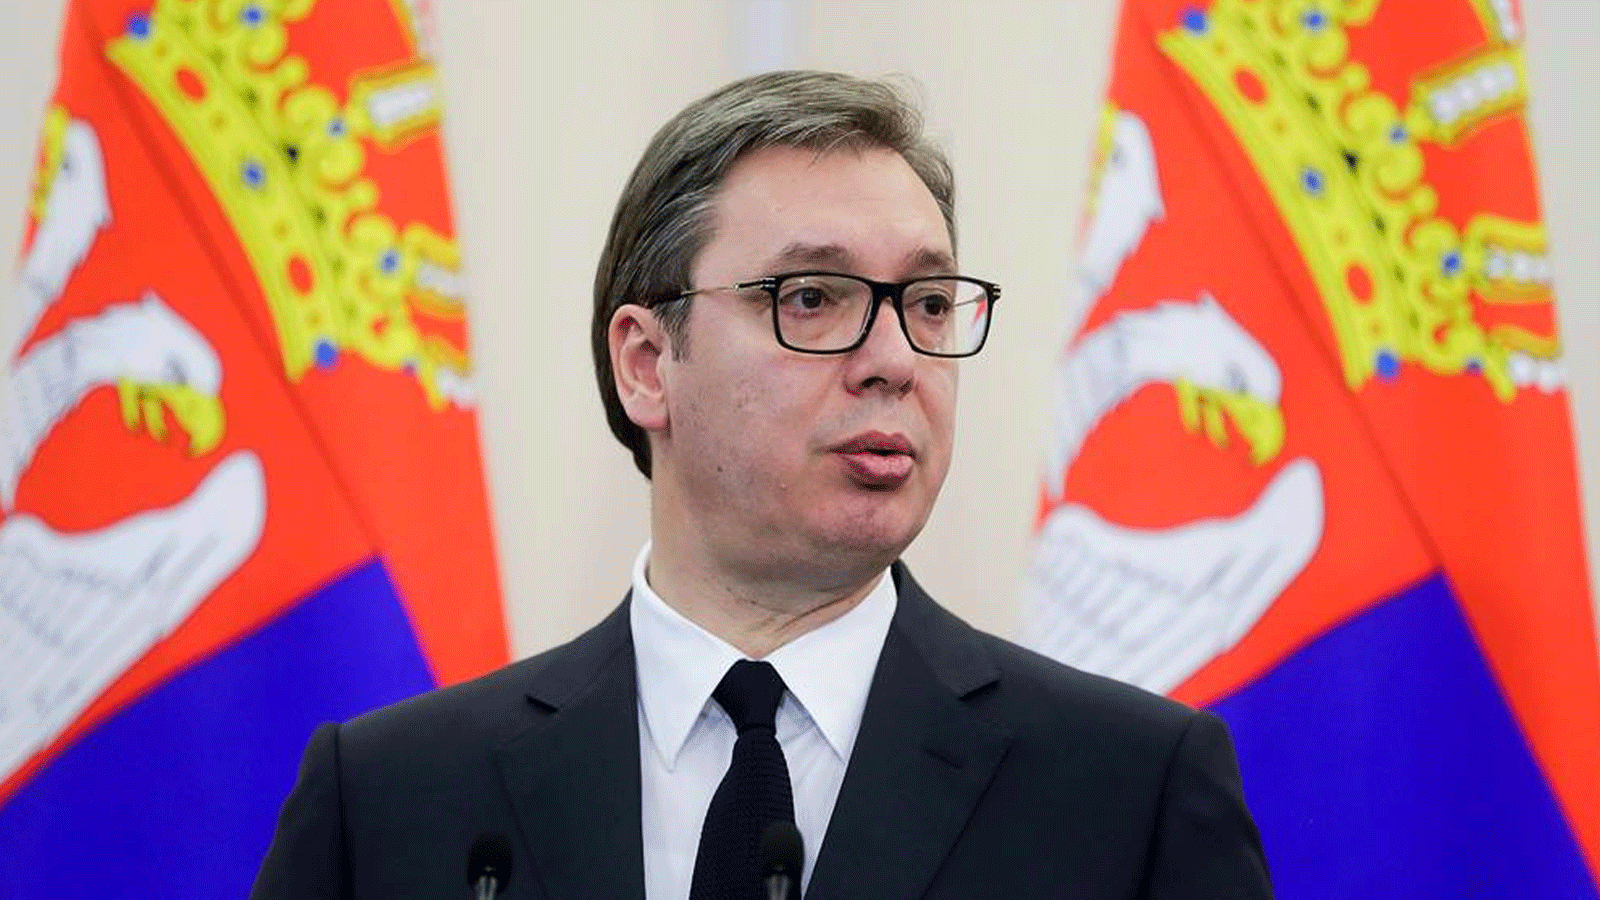 الرئيس الصربي ألكسندر فوتشيتش